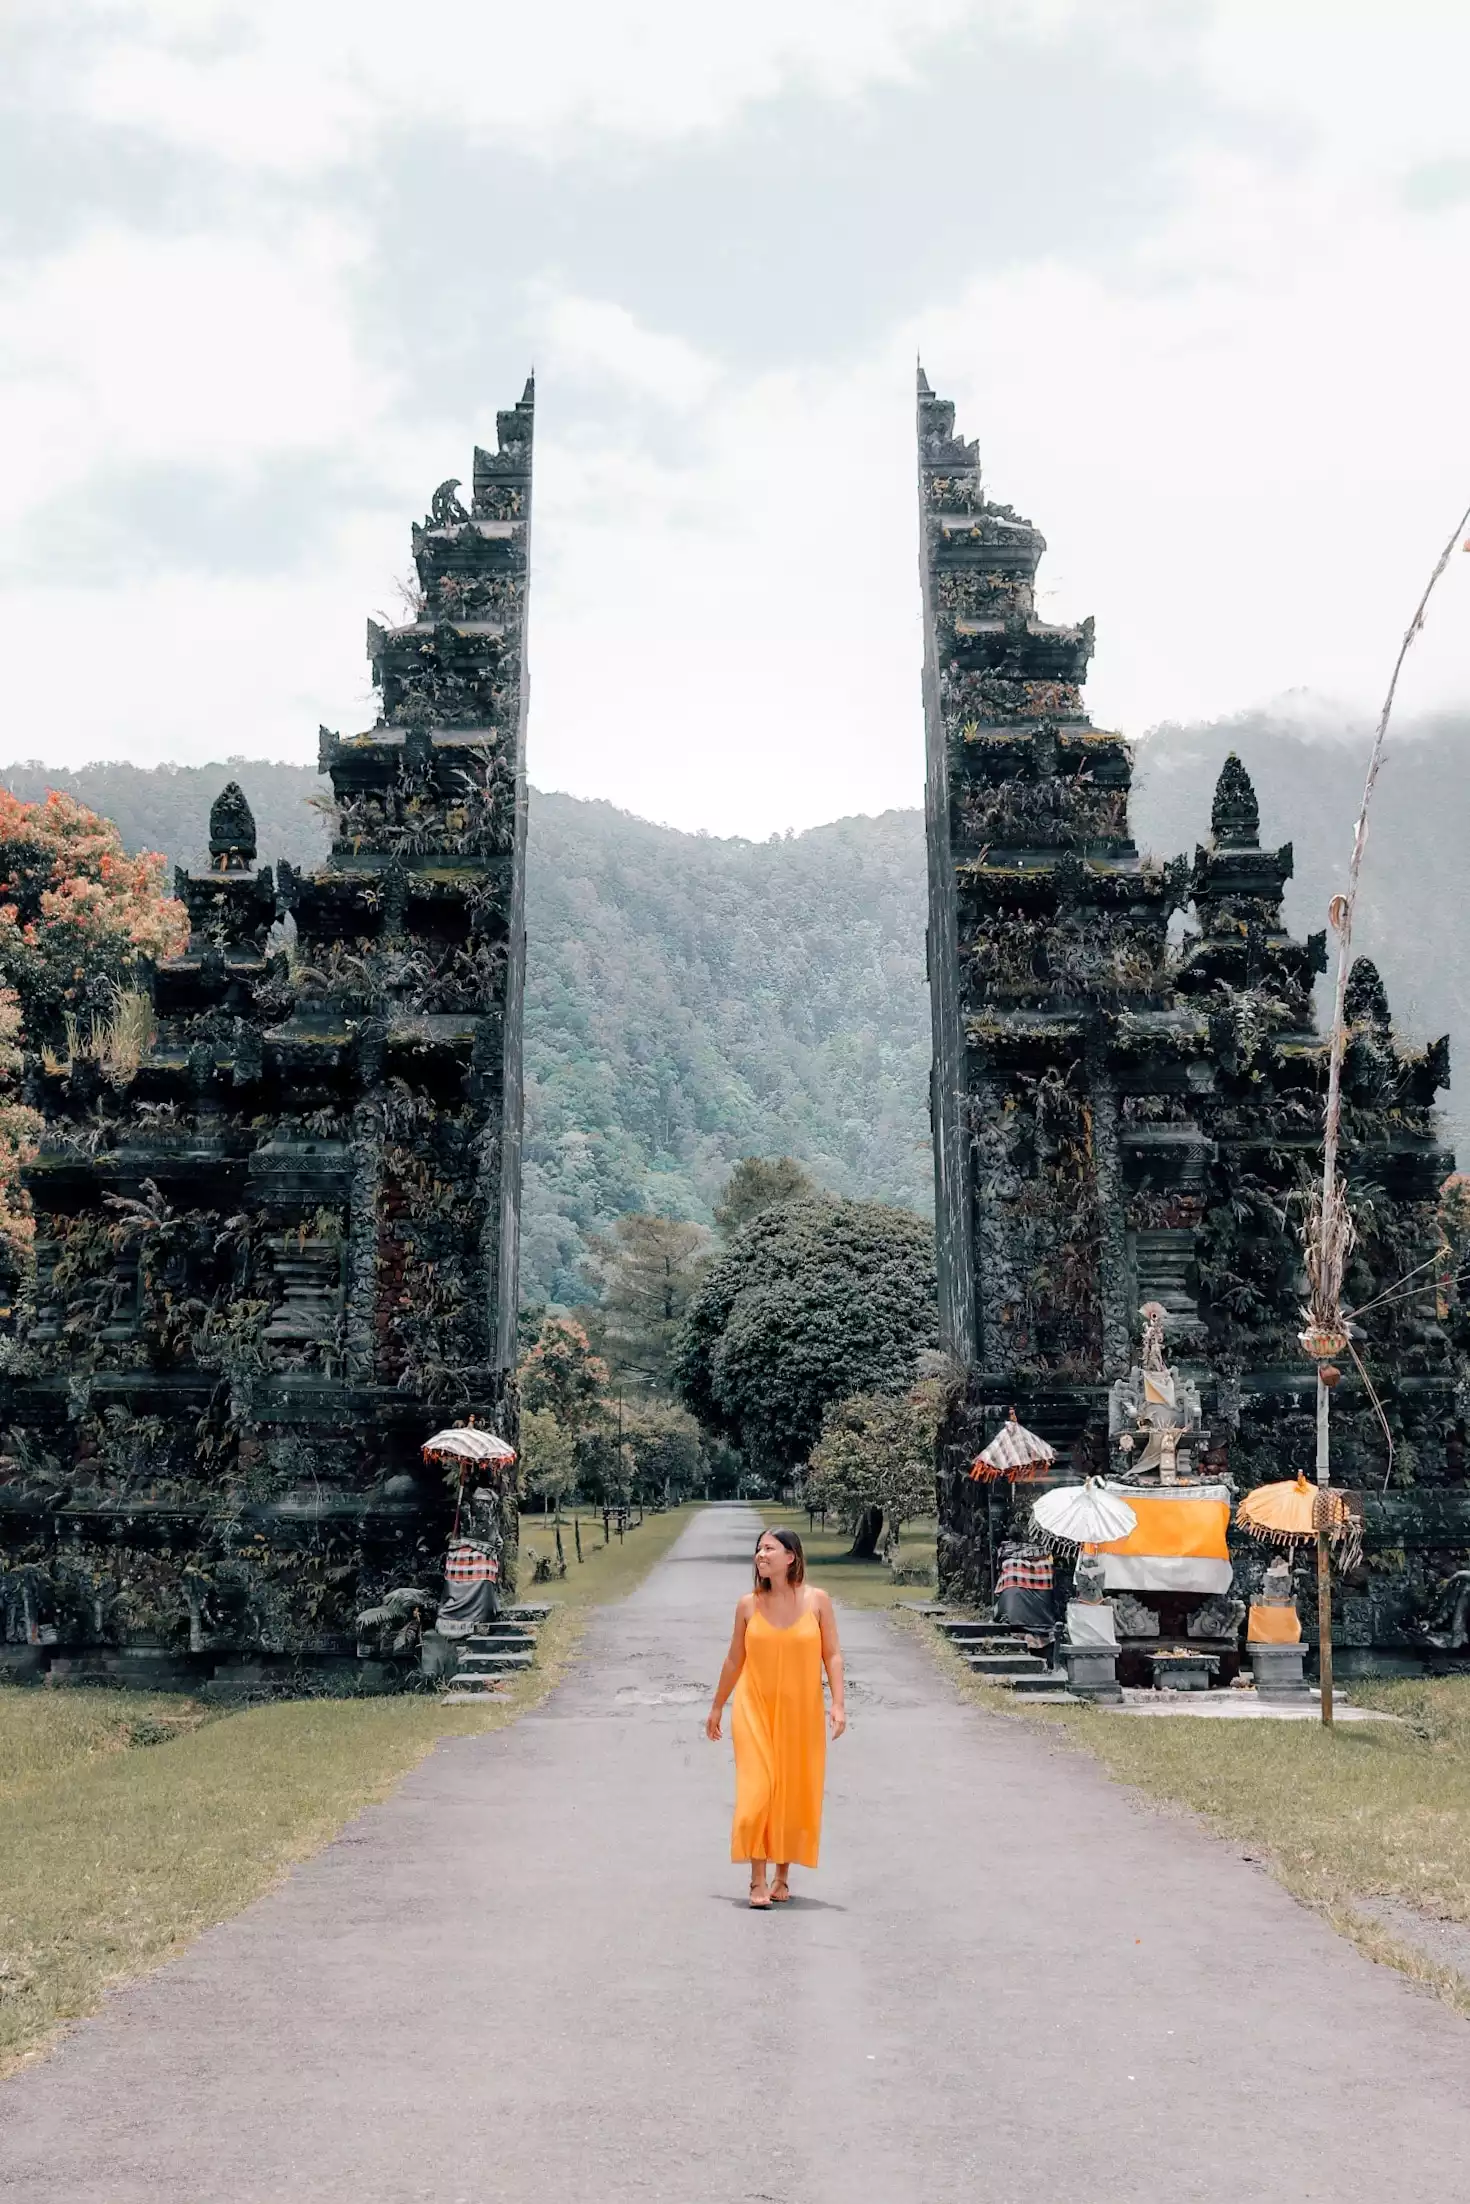 Goedkope vakanties naar Bali